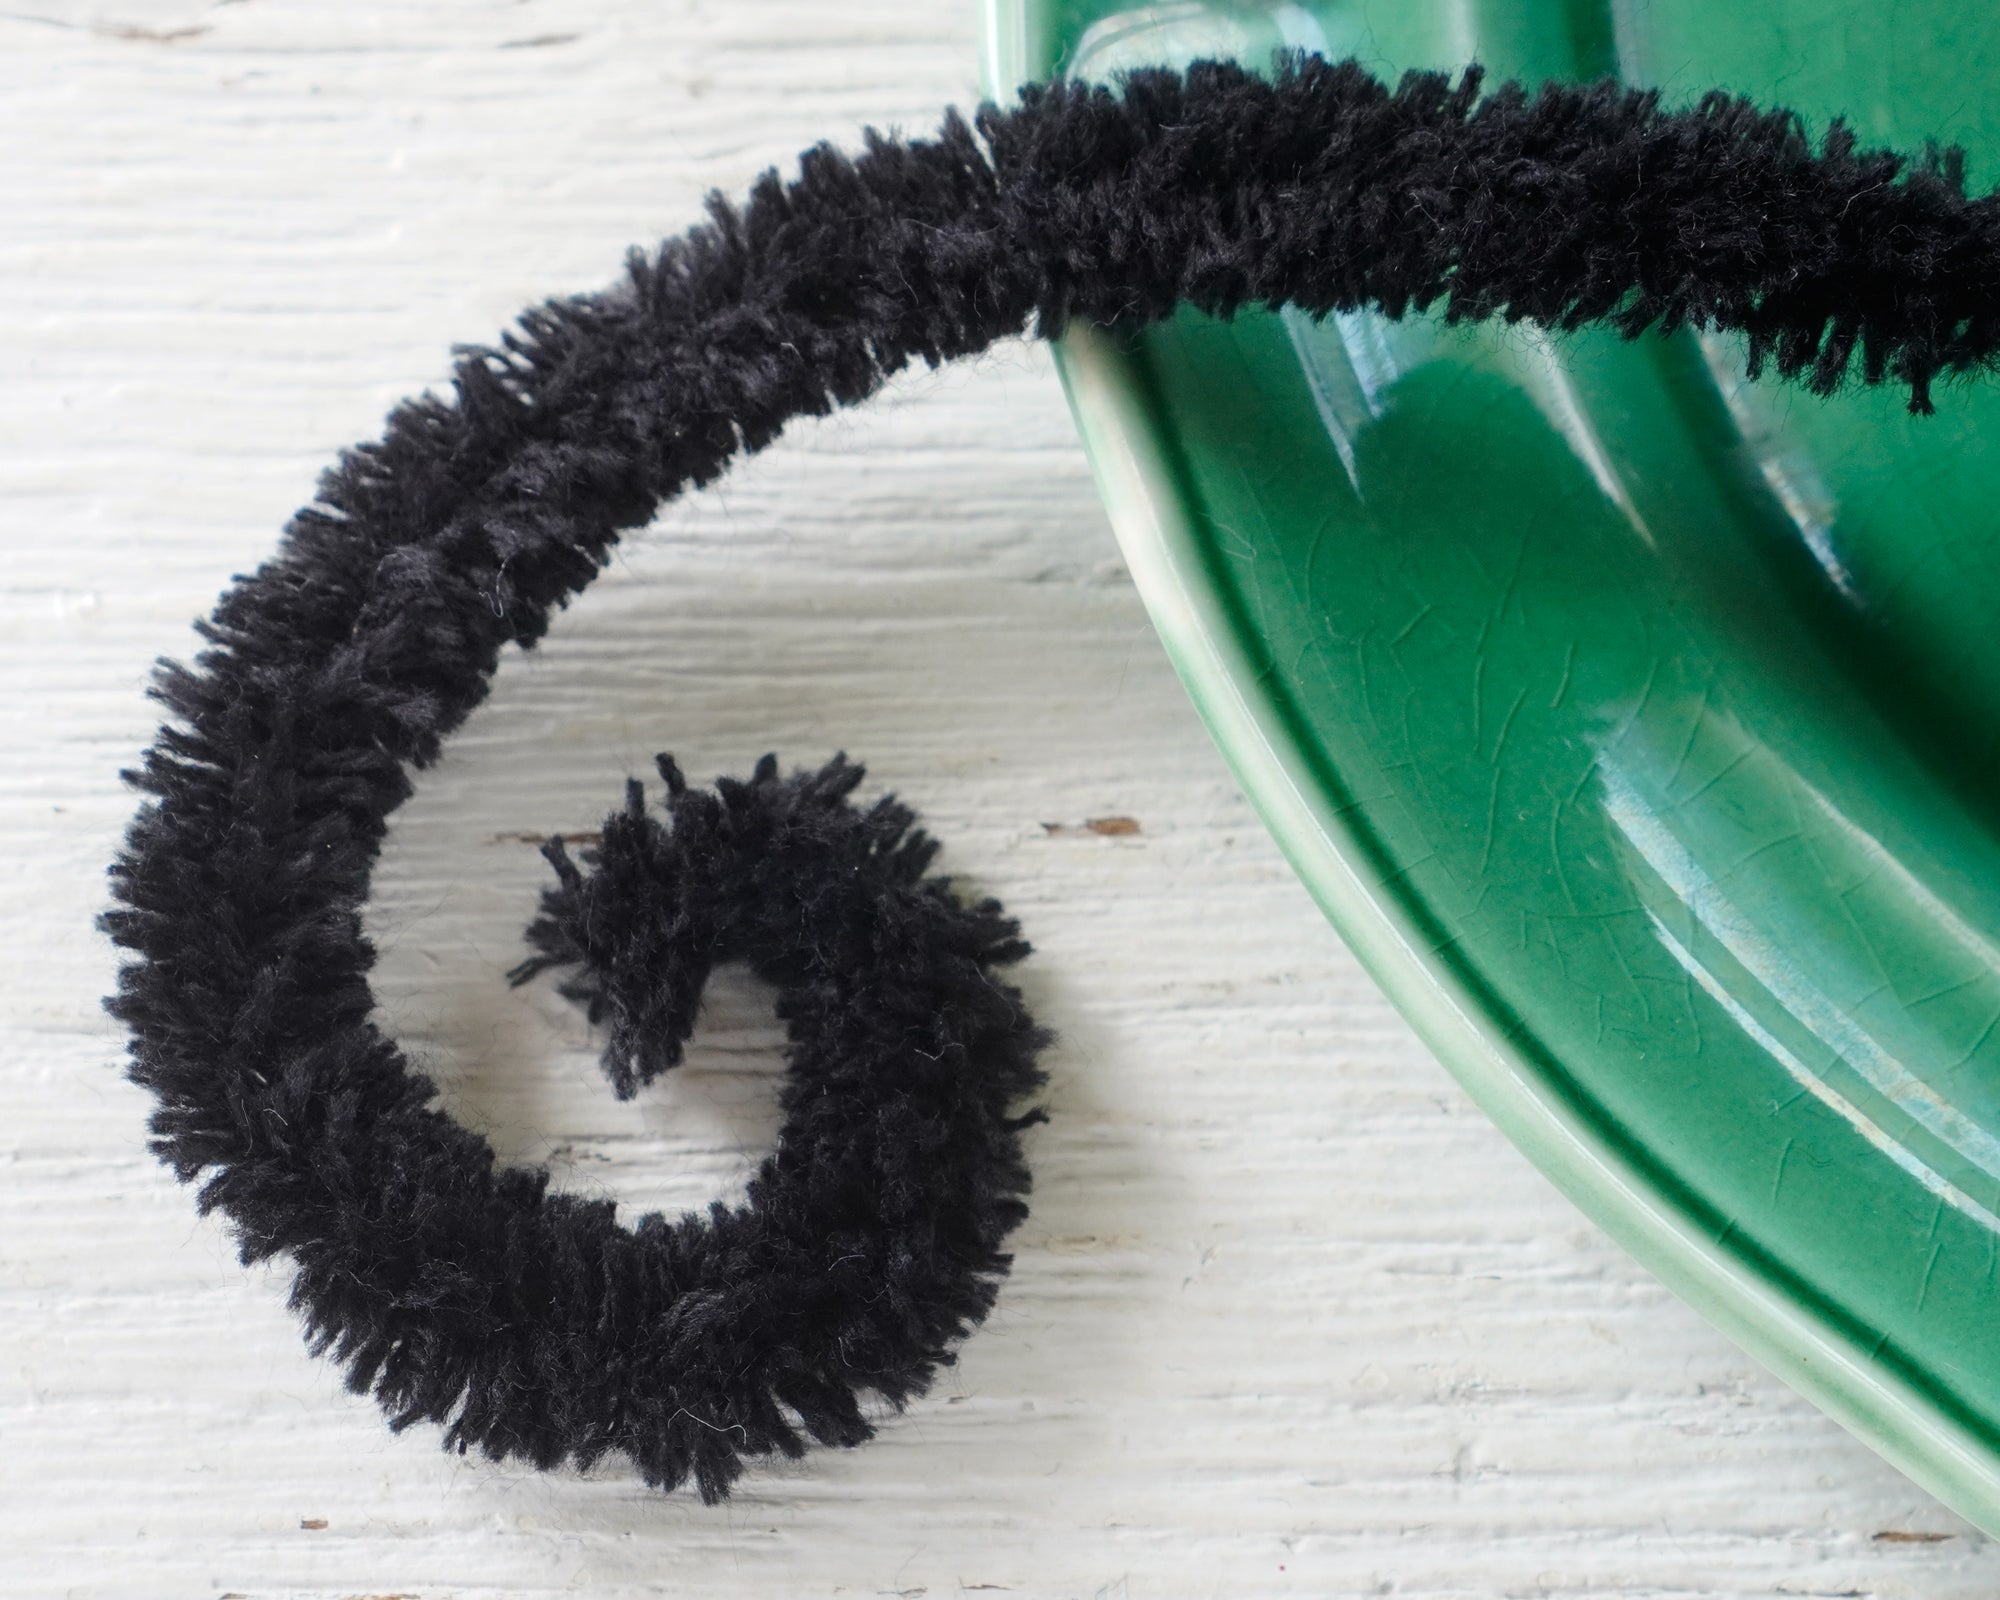 Wired Black Yarn Trim - Fluffy Yarn Fur Craft Cord, 3 Yds.